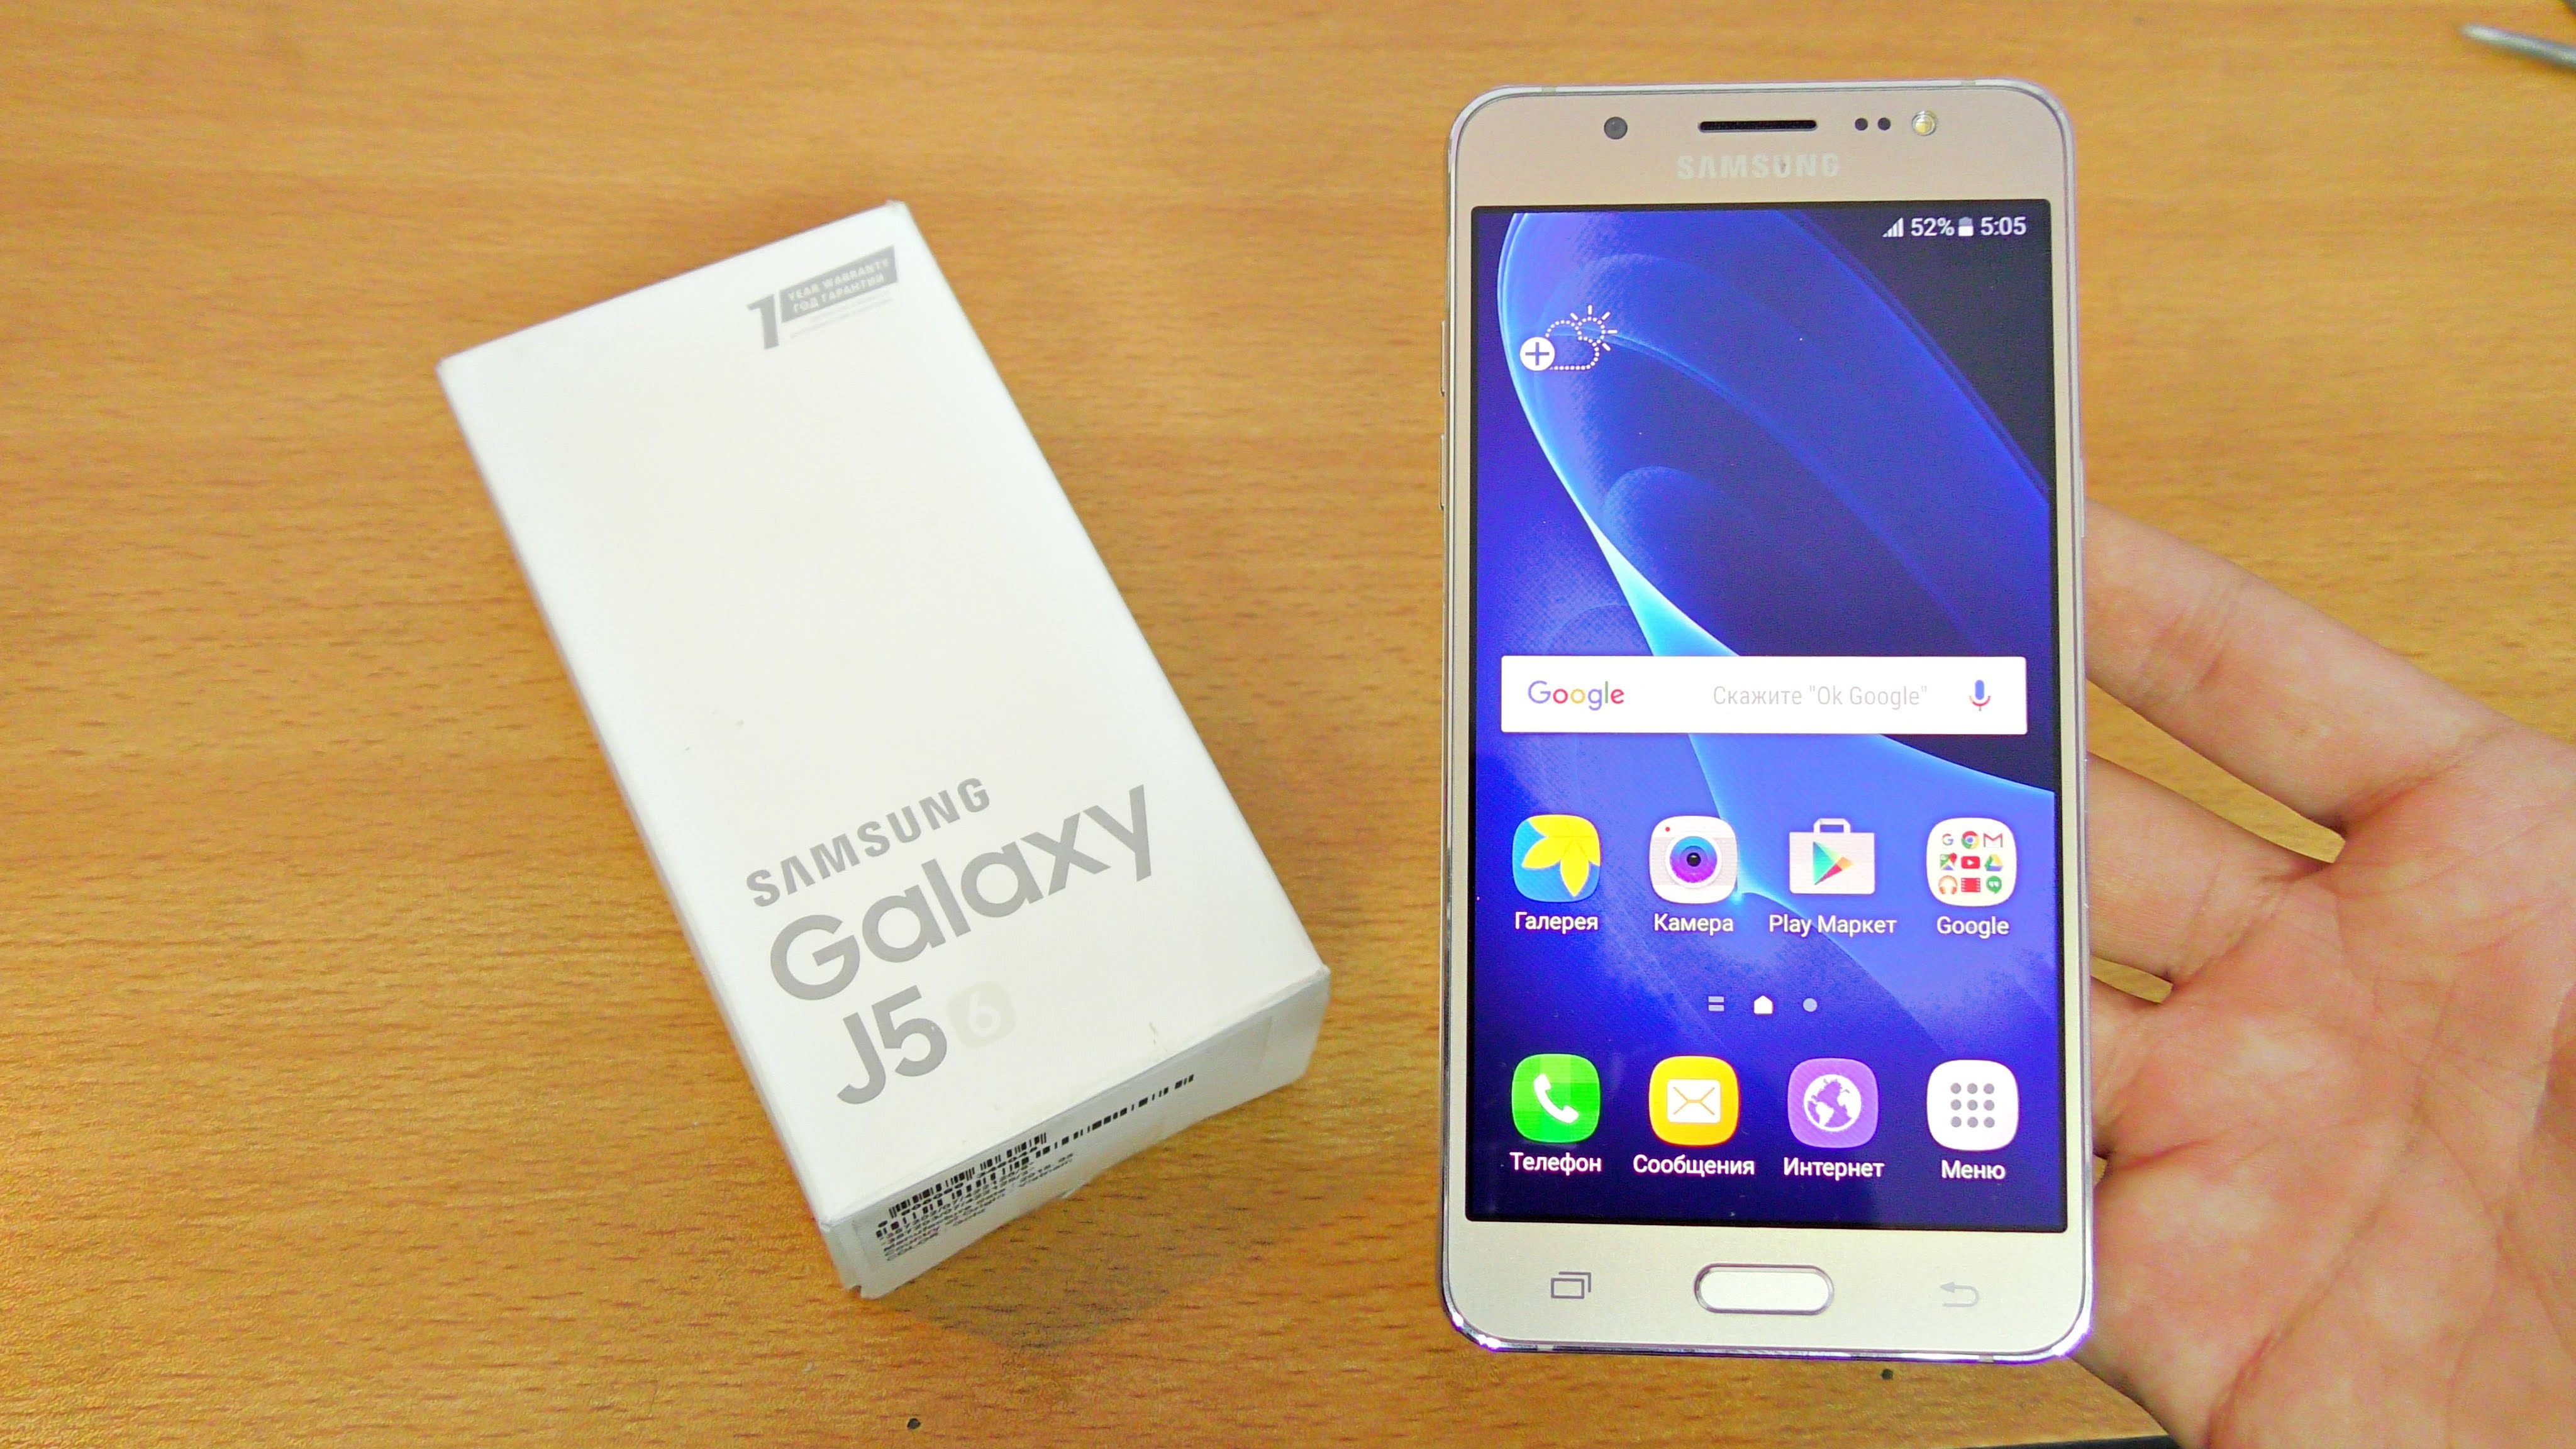 Sm j5 2016. Samsung j5 2016. Samsung Galaxy j5 2016. Samsung Galaxy j5 6 2016. Samsung Galaxy j5 (2016) Gold.